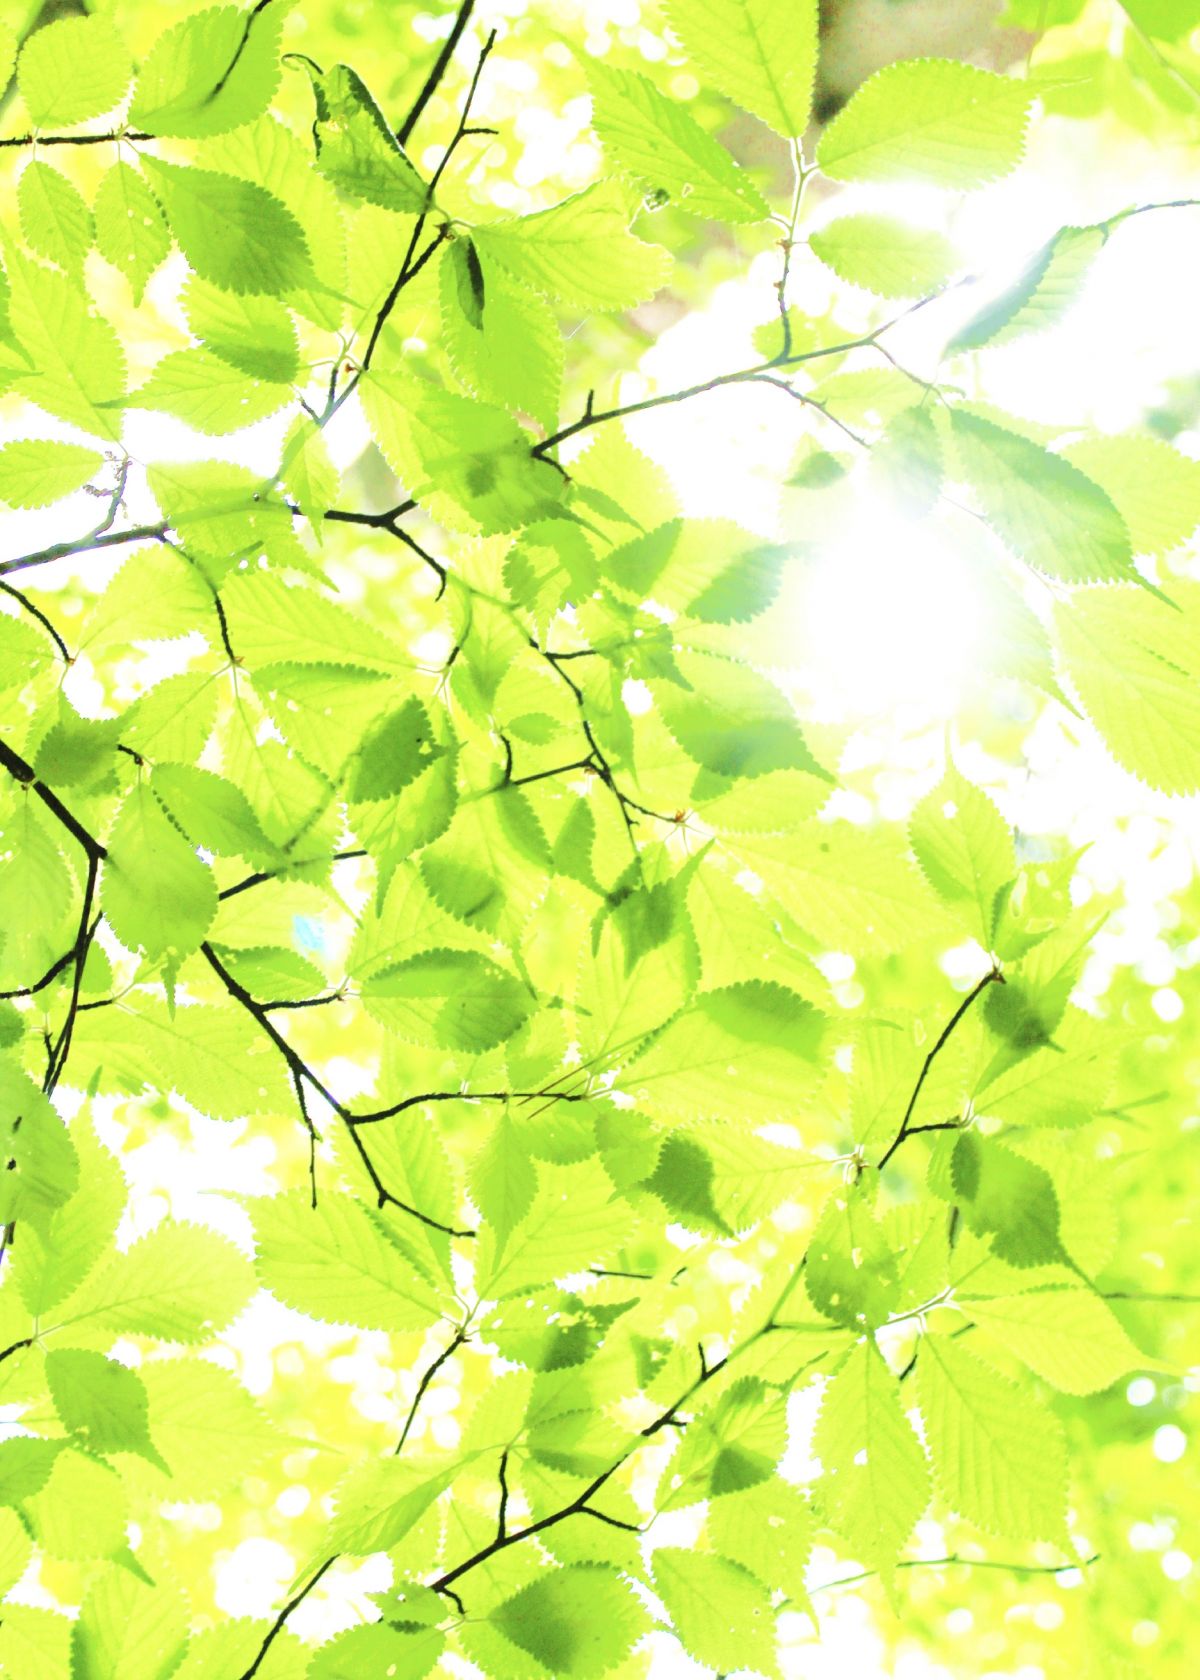 Die oberen Blätter transparenter zu machen, damit die unteren mehr Licht aufnehmen können, ist nur ein Ansatz von vielen, mit denen sich die Photosynthese-Rate vermutlich steigern lässt.